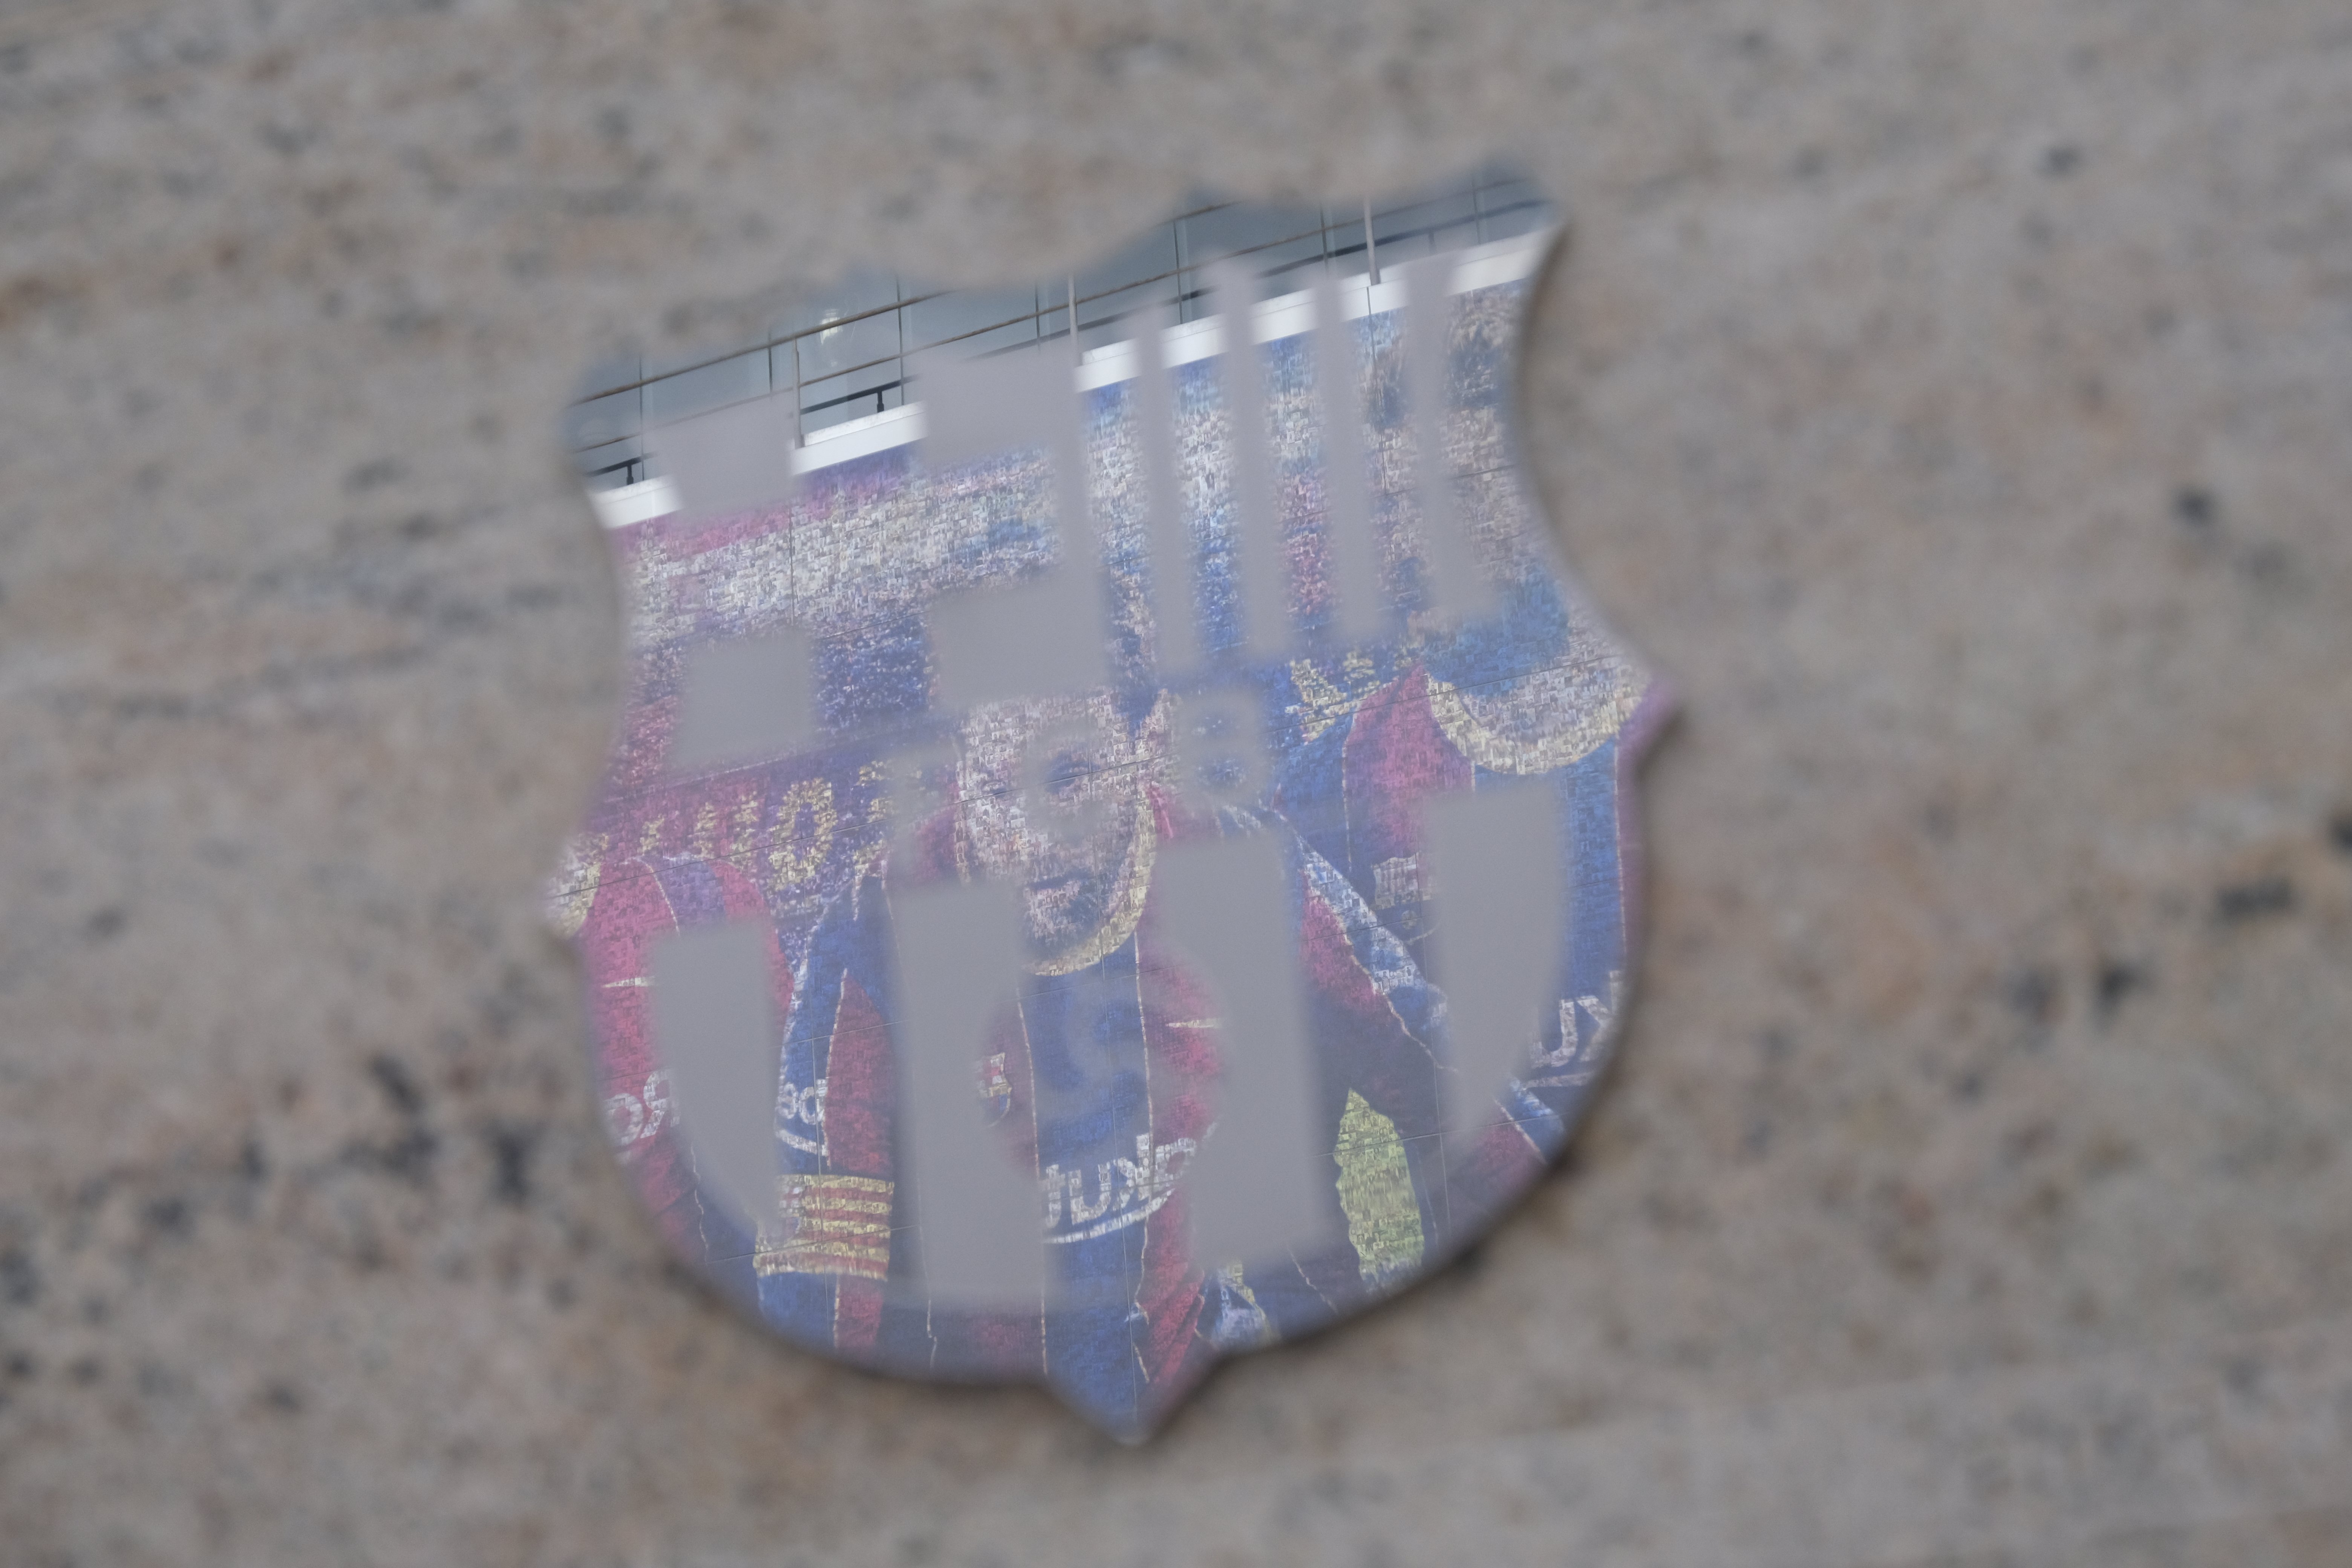 El Barça, tocado y hundido: más pérdidas millonarias por la marcha de Messi